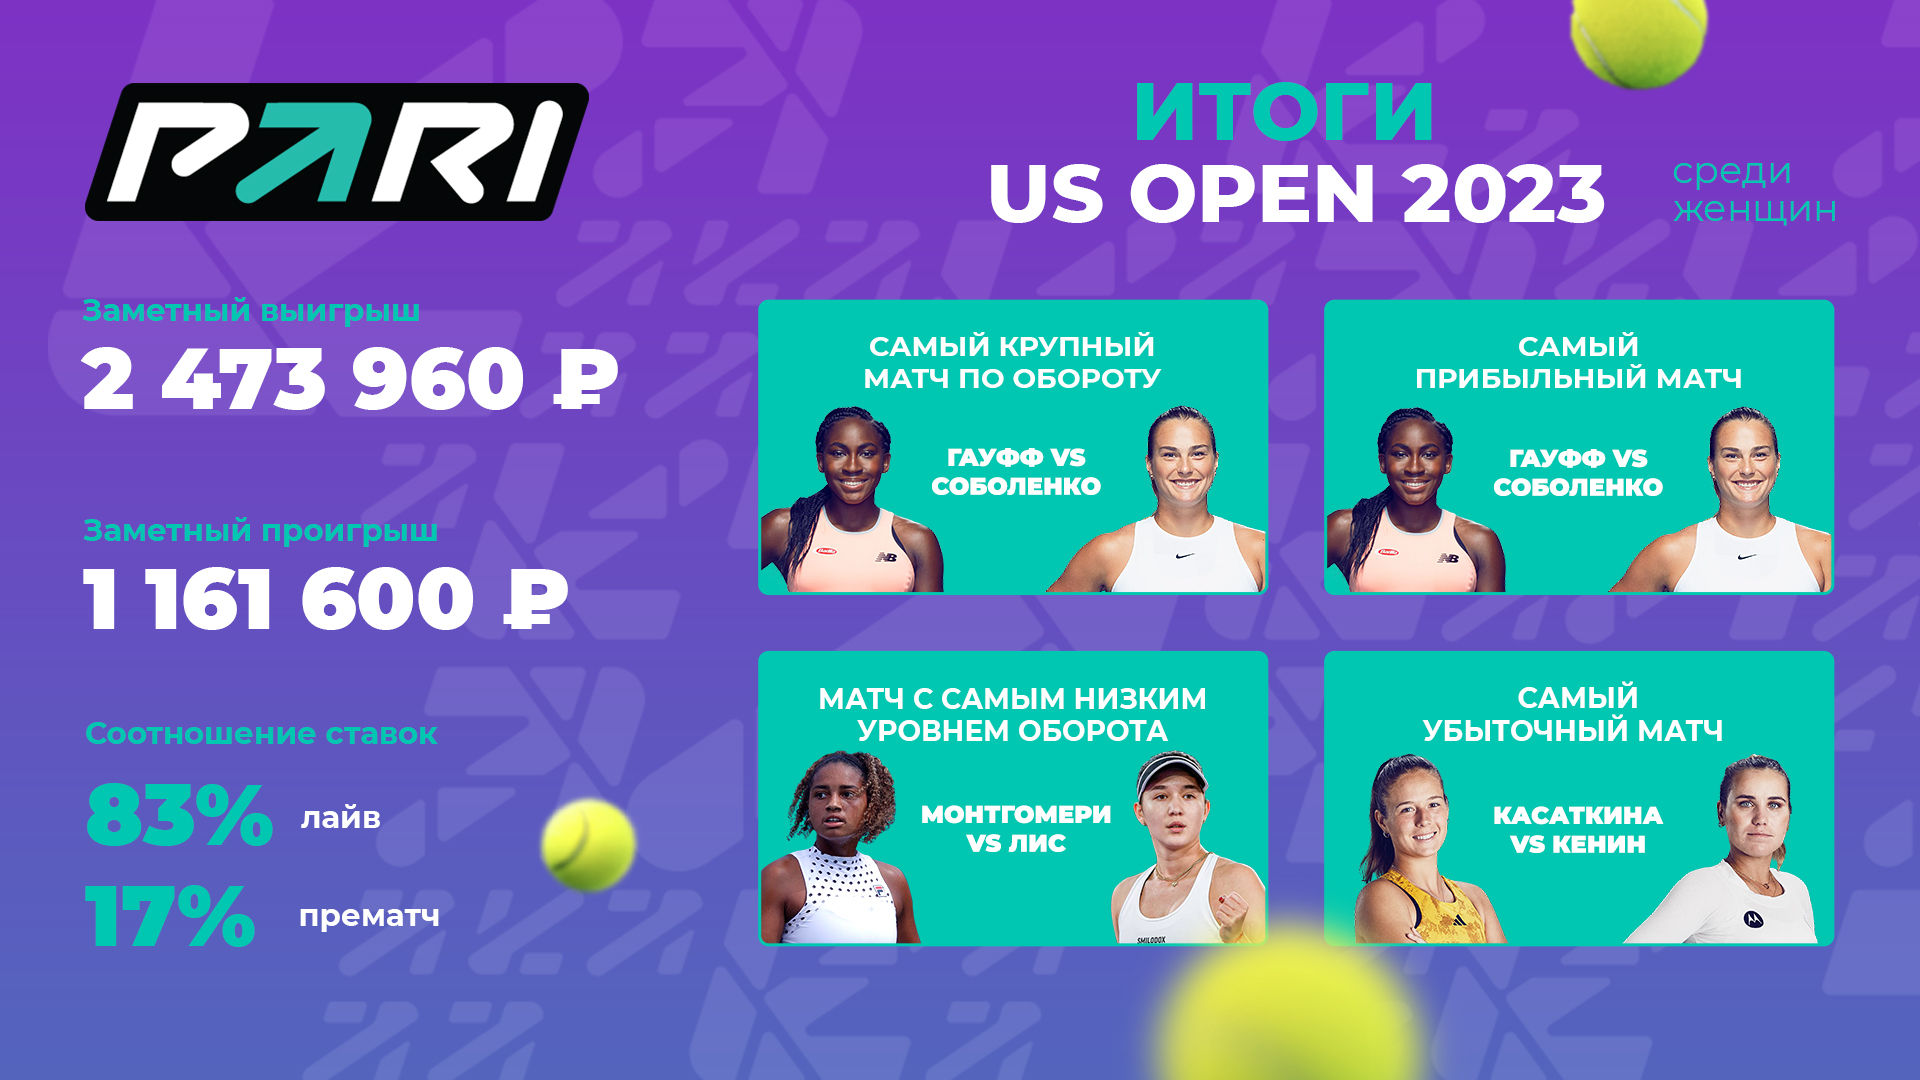 Матч Гауфф — Соболенко стал самым популярным событием женского US Open-2023 в PARI